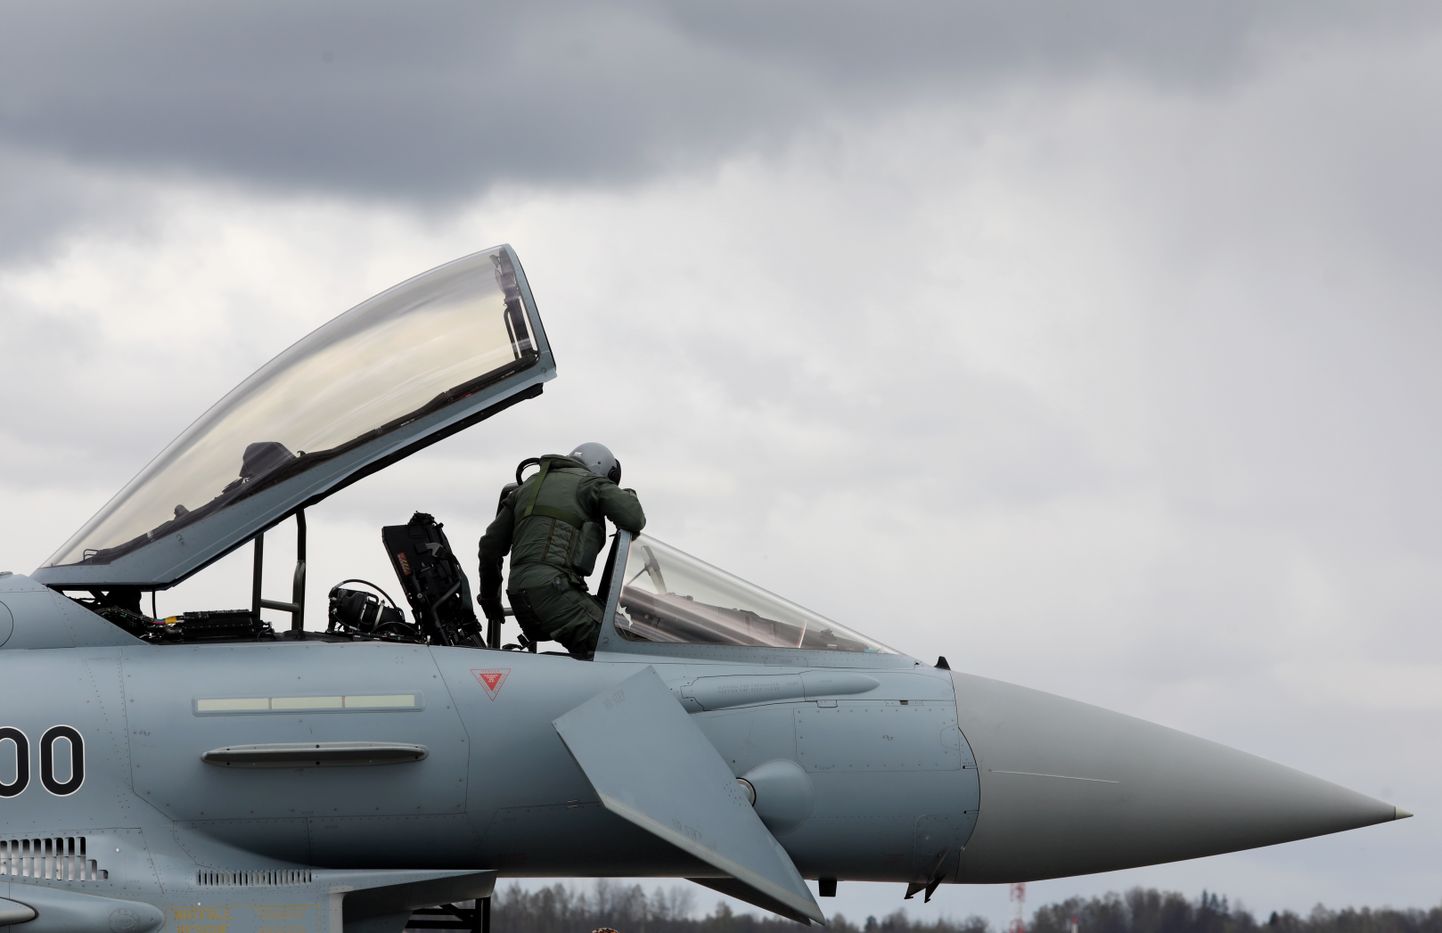 Militārais gaisa kuģis "Eurofighter" NATO Baltijas gaisa telpas patrulēšanas misijas mediju dienas laikā Nacionālo bruņoto spēku militārajā bāzē "Lielvārde".